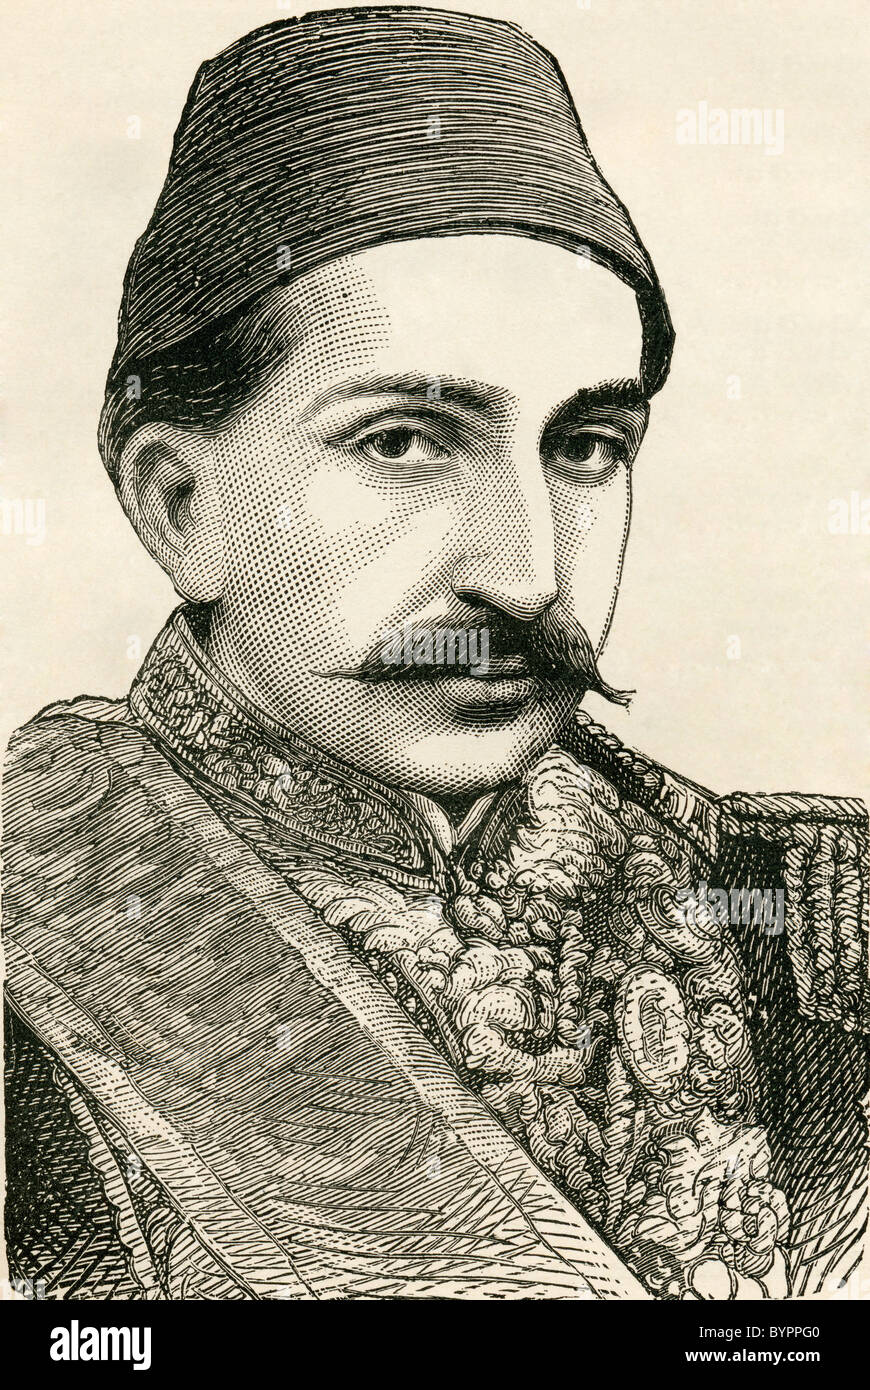 Su Majestad Imperial, el Sultán Abdülhamid II, emperador de los otomanos, el califa de los fieles, de 1842 a 1918. Foto de stock